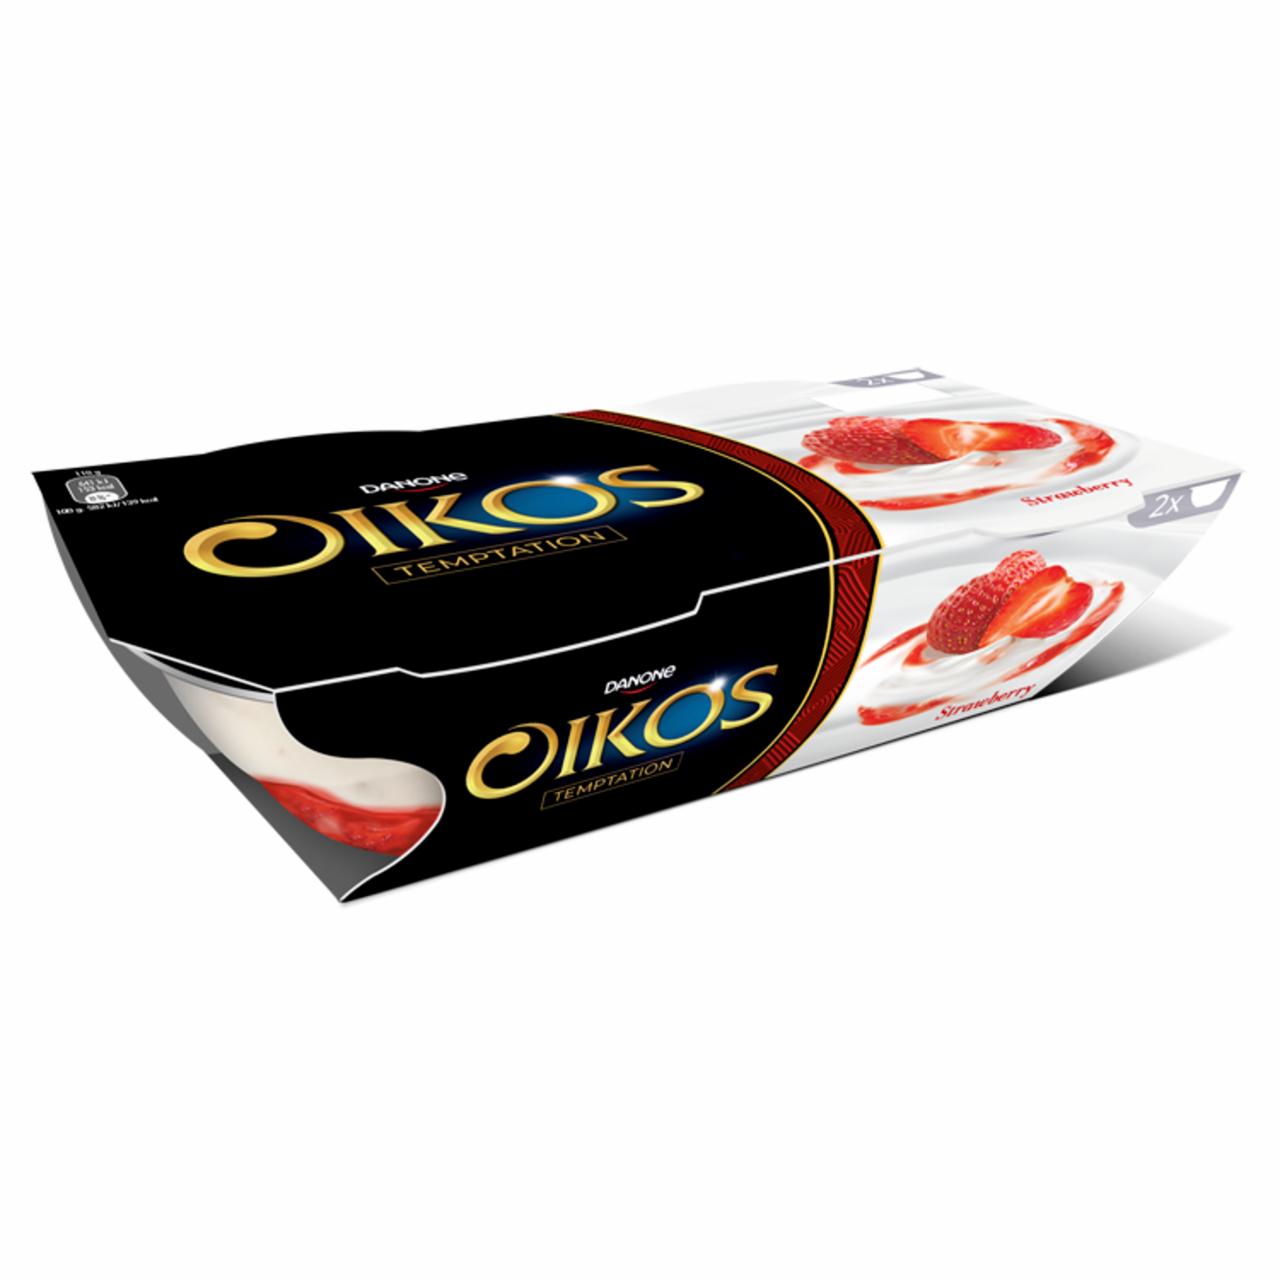 Képek - Danone Oikos élőflórás görög krémjoghurt eperöntettel 2 x 110 g